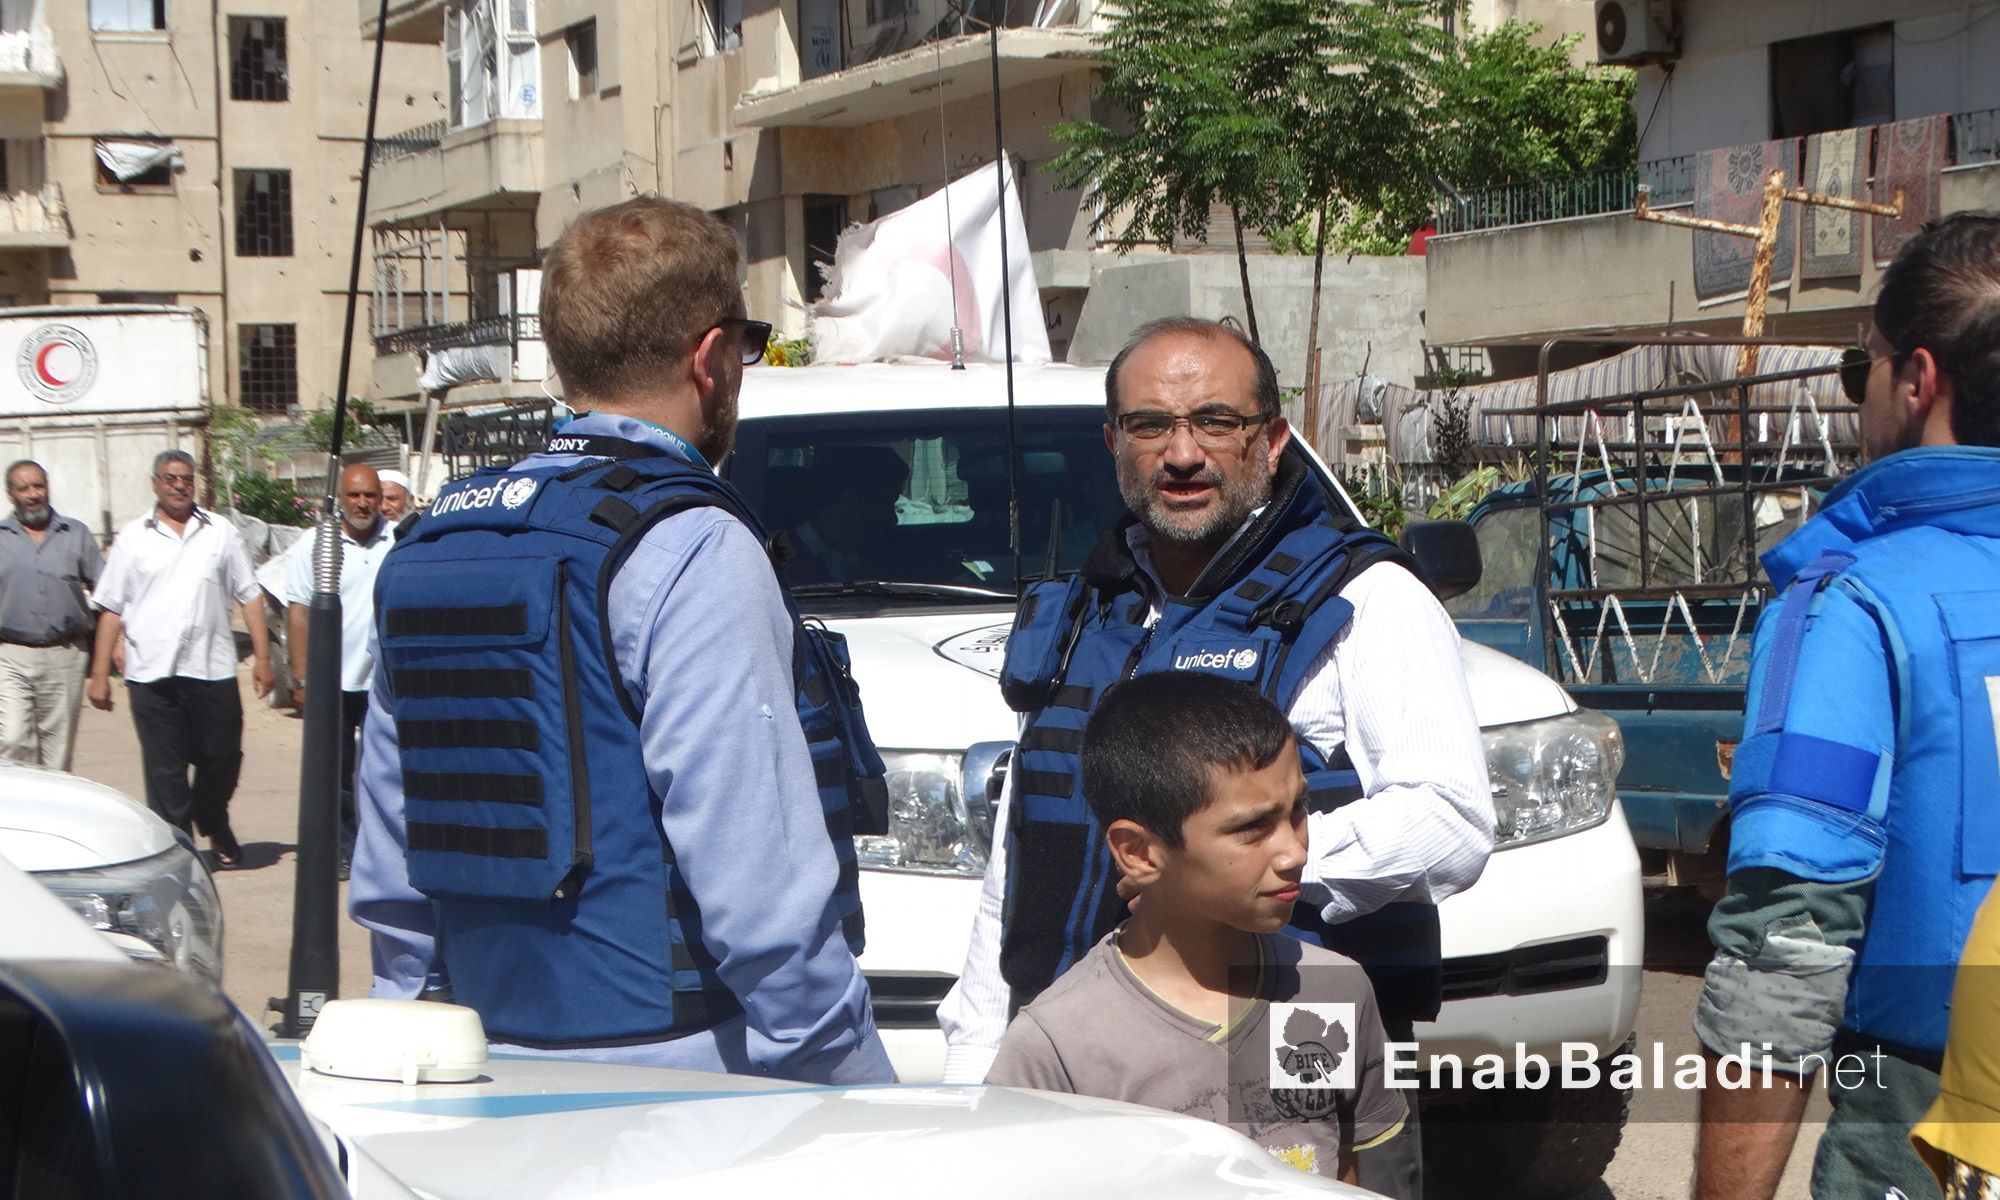  الوفد المرافق لقافلة  المساعدات داخل حي الوعر في حمص - الخميس 14 تموز (عنب بلدي)